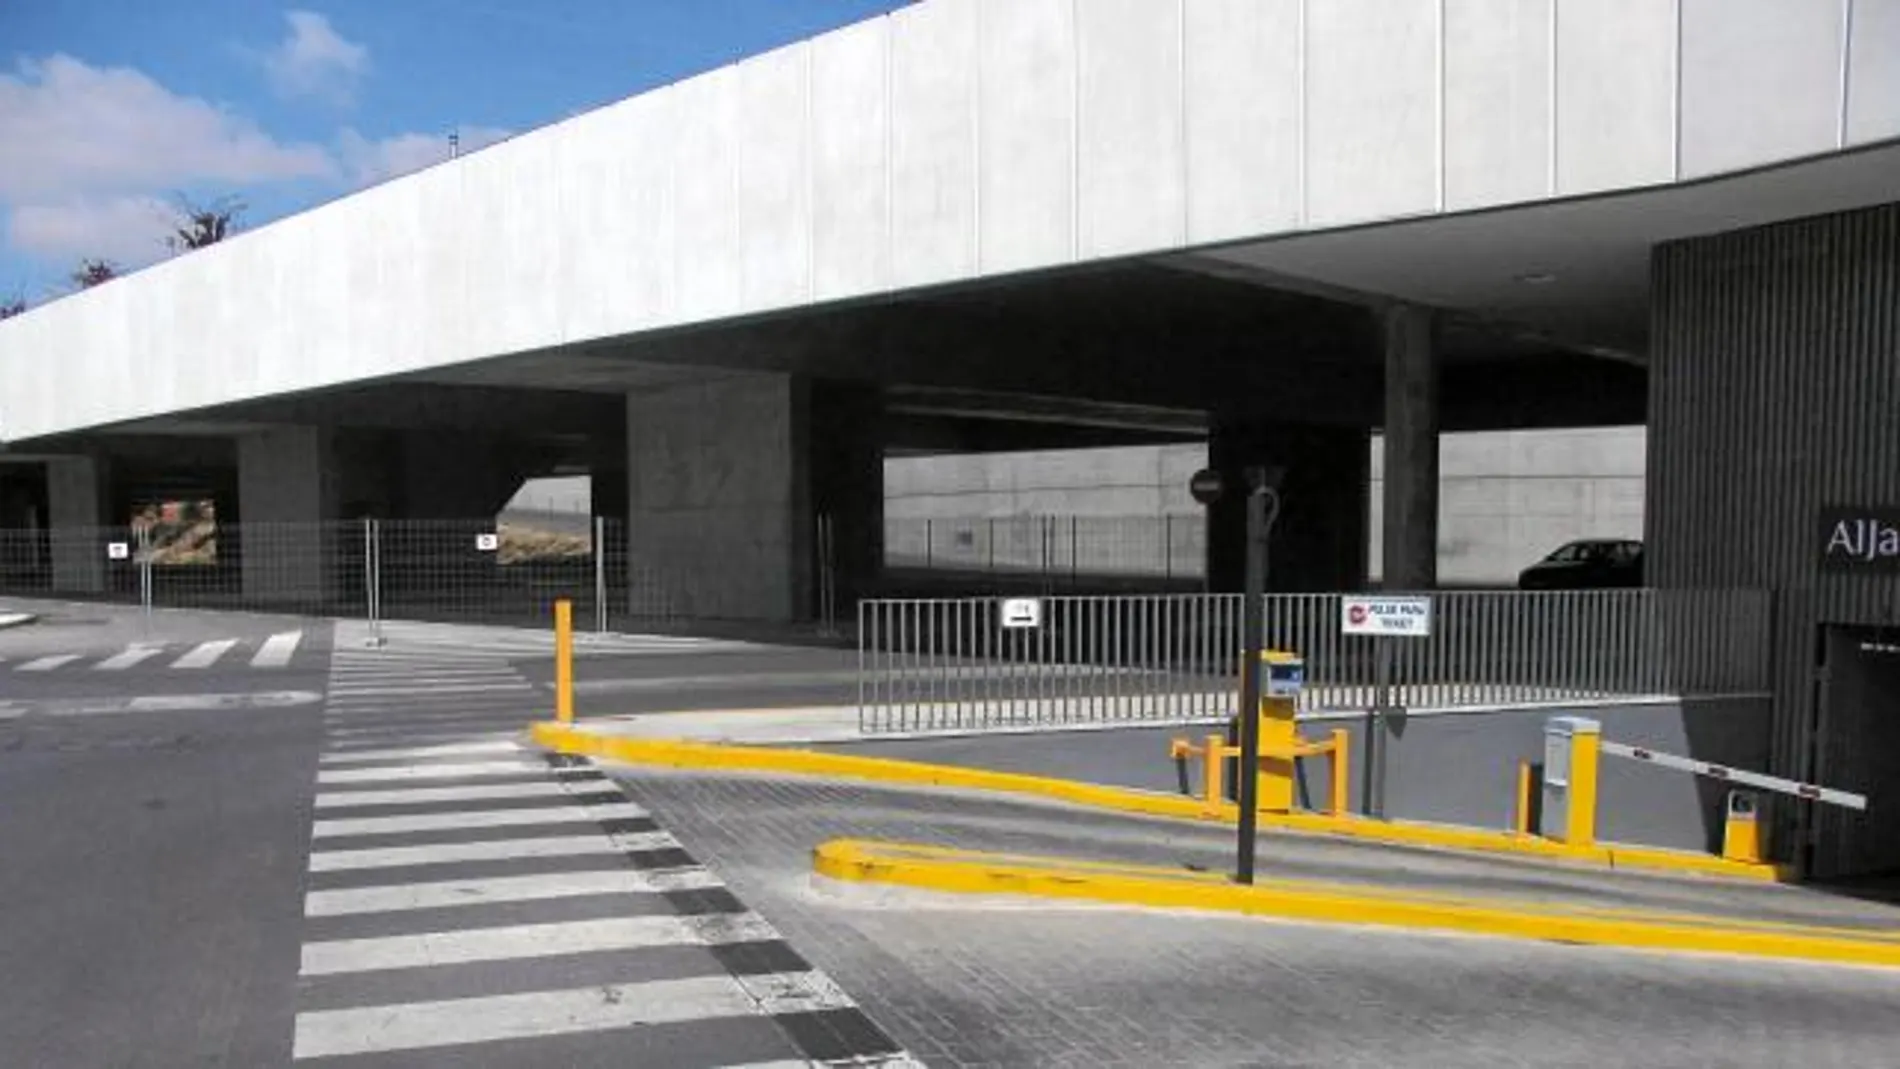 Intercambiador Retrasos. Esta infraestructura debe conectar el Polígono Industrial Pisa con la estación de metro de Ciudad Expo